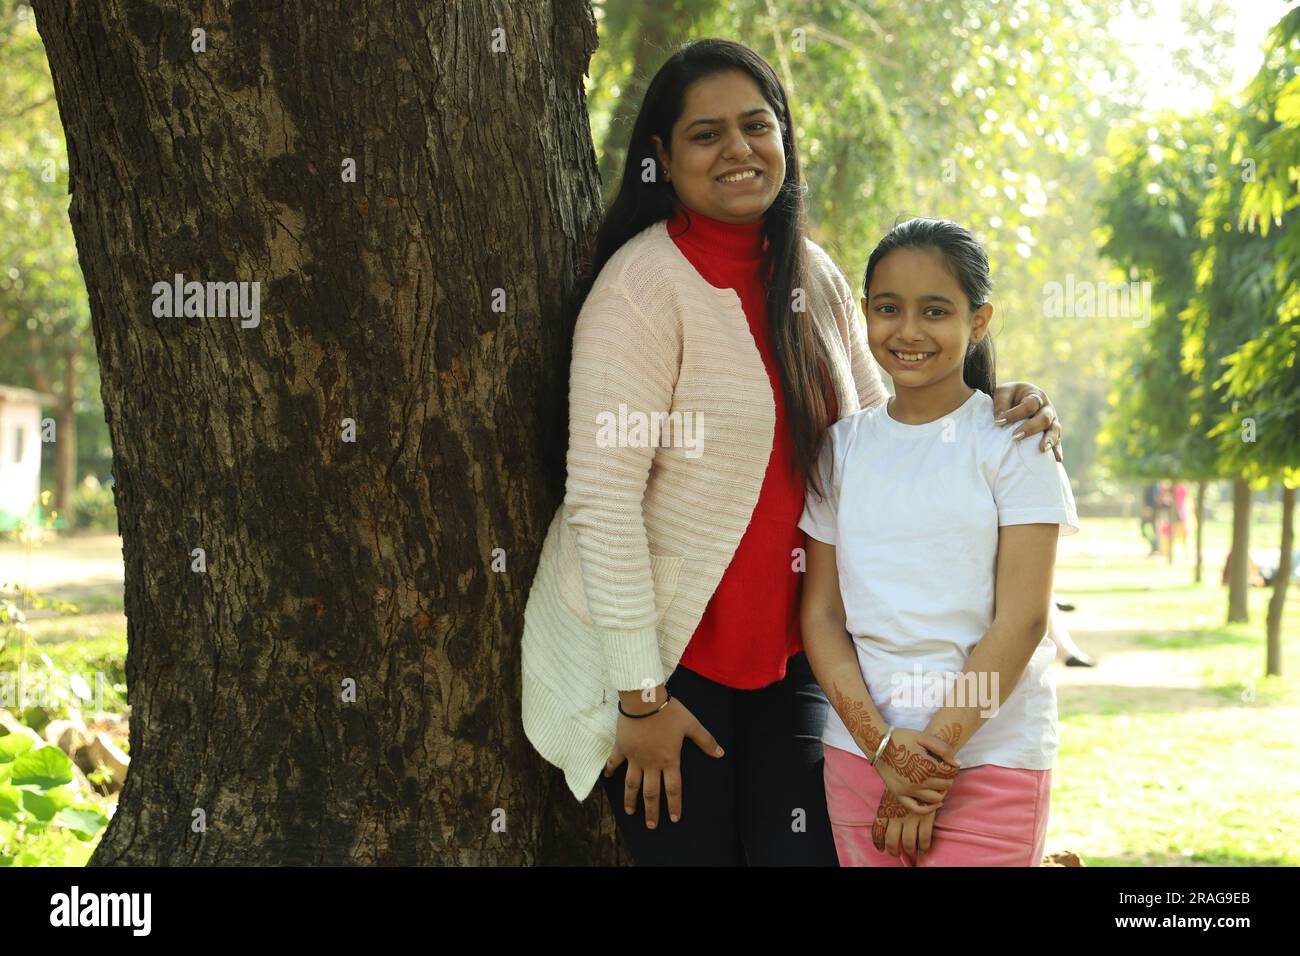 Madre e figlia indiane che si divertono insieme nel parco di giorno. La figlia è amata e si sente al sicuro con sua madre. Foto Stock